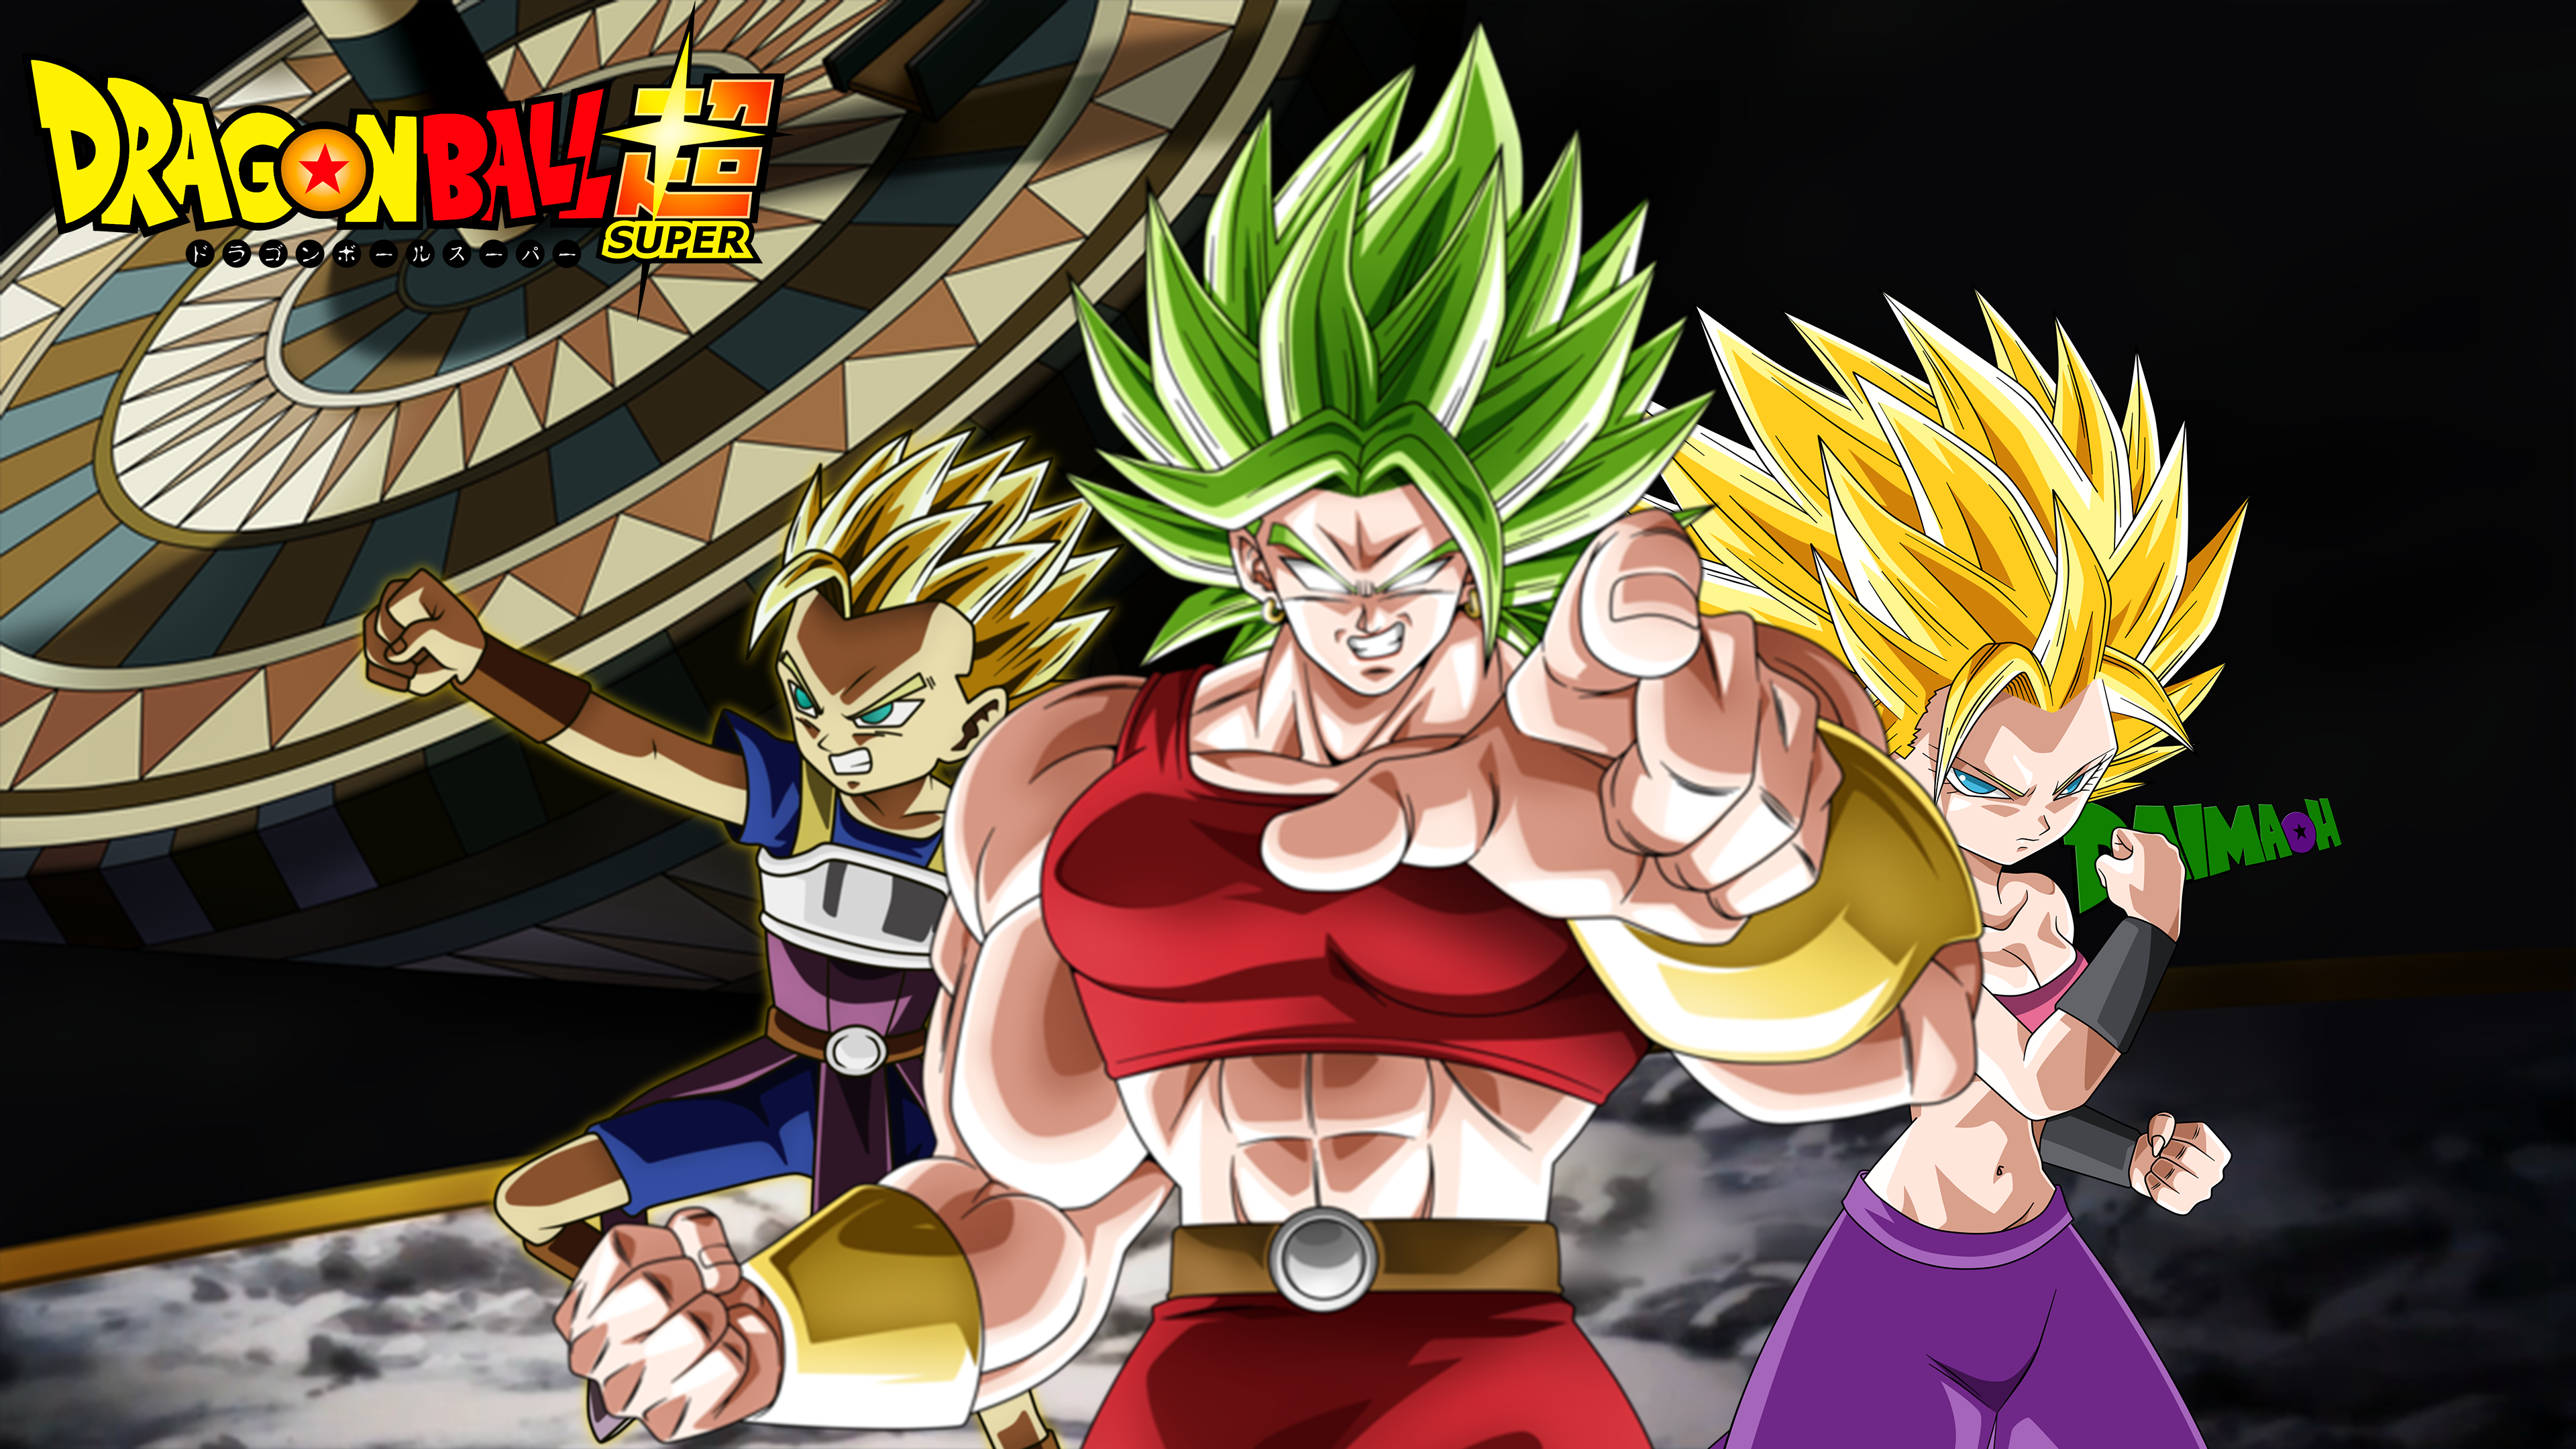 Goku Super Saiyajin 6 de Dragon - Dragon Ball Universe